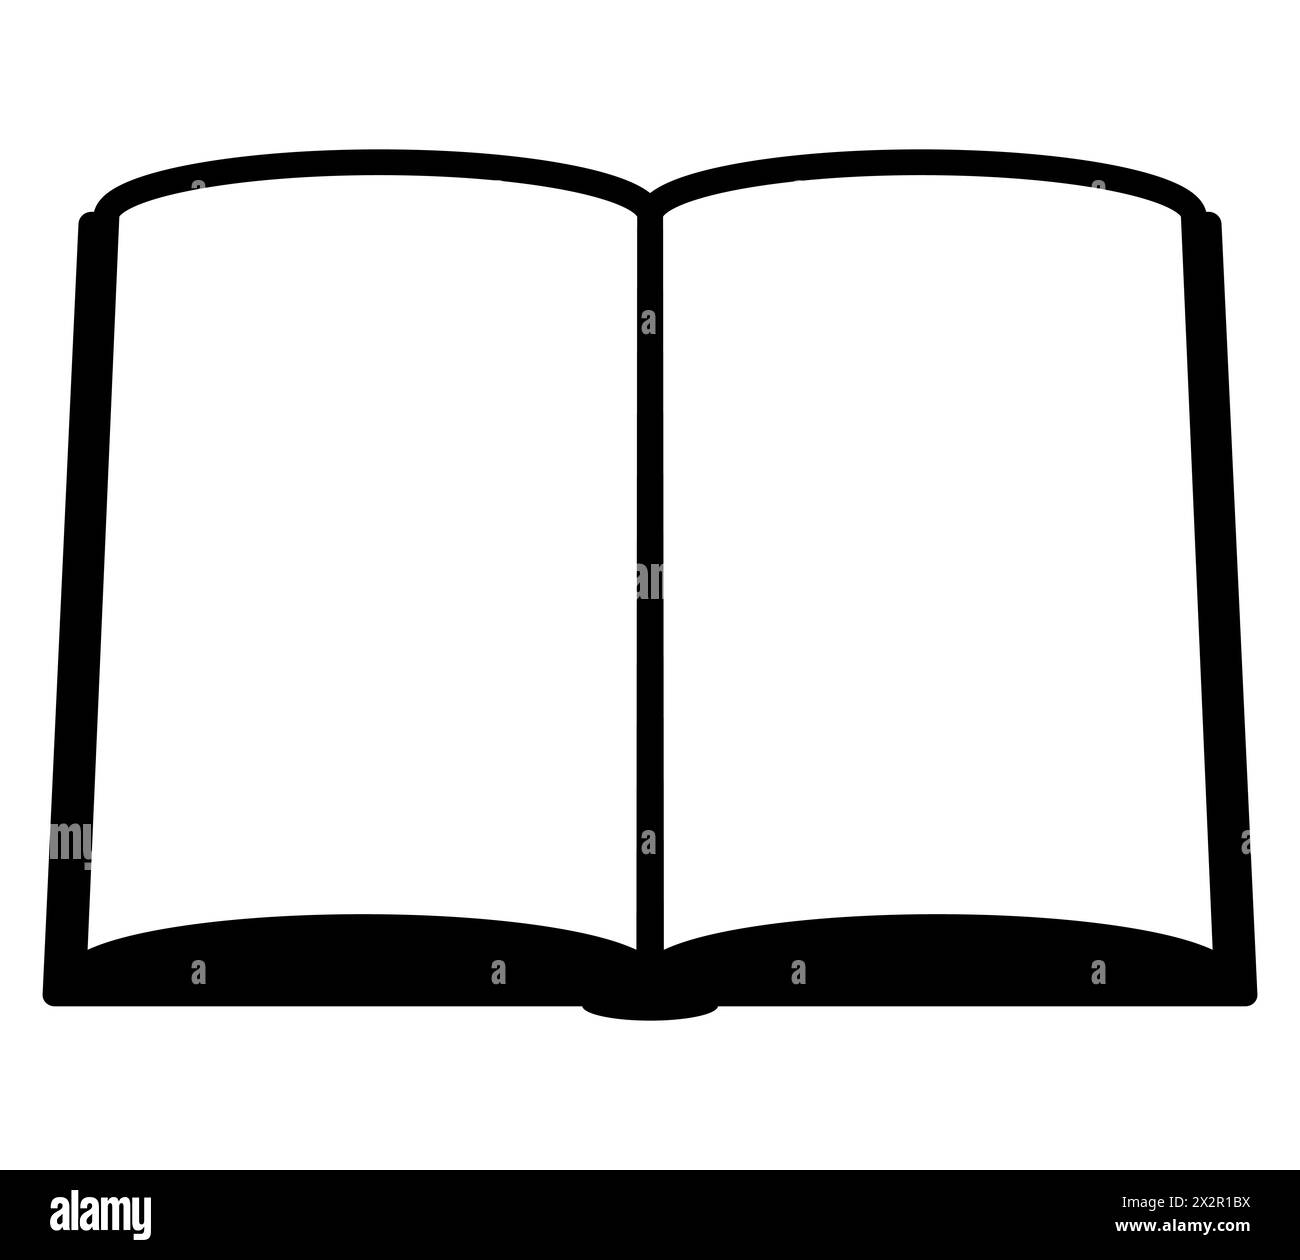 libro - simbolo semplice in bianco e nero di un libro aperto, illustrazione vettoriale isolata su bianco Illustrazione Vettoriale